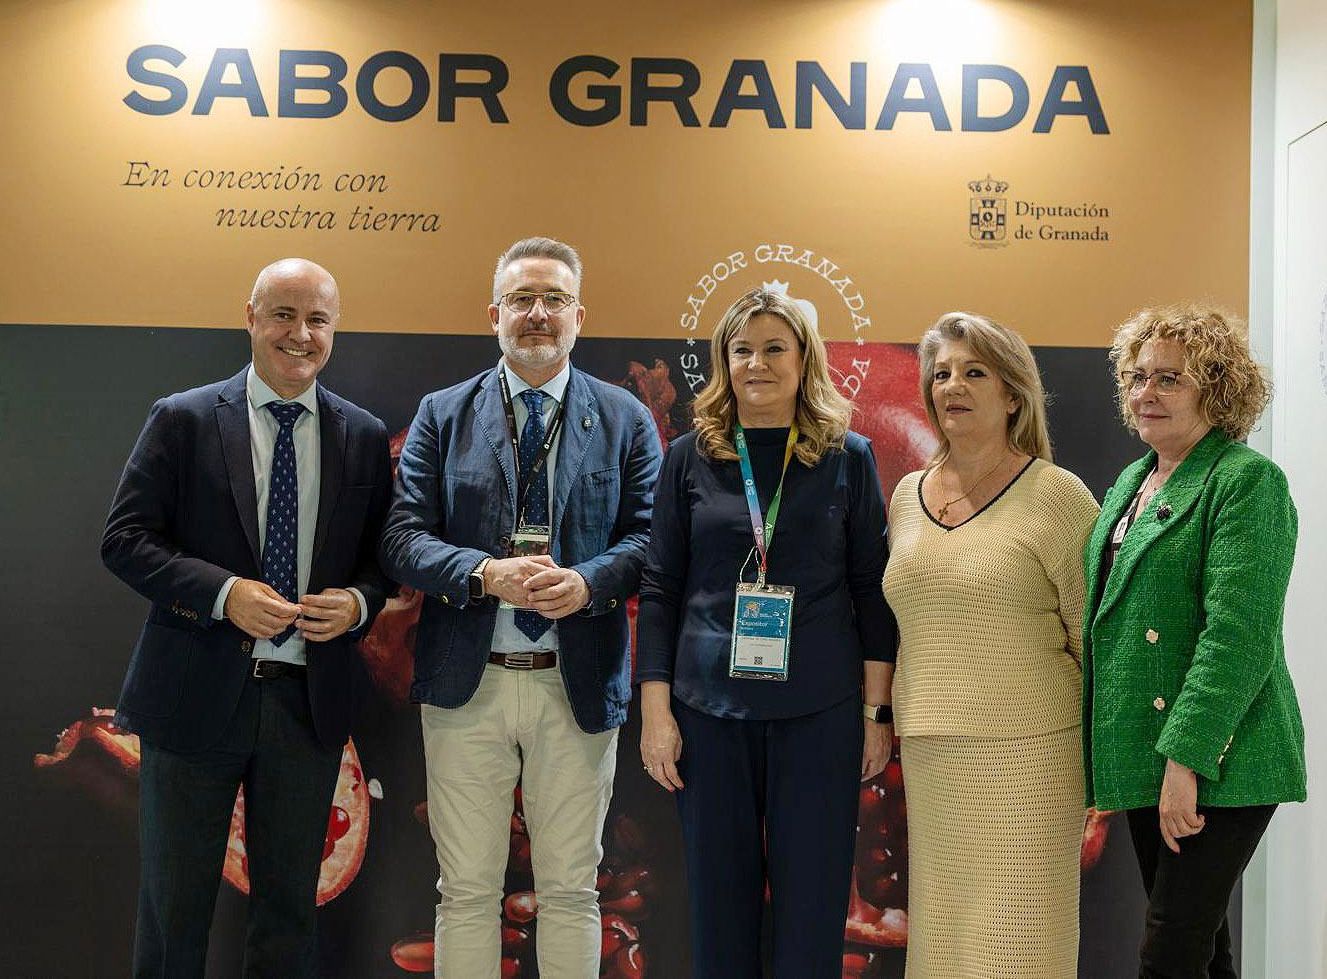 La gastronoma granadina se muestra en Saln Gourmet de la mano de la marca Sabor Granada
